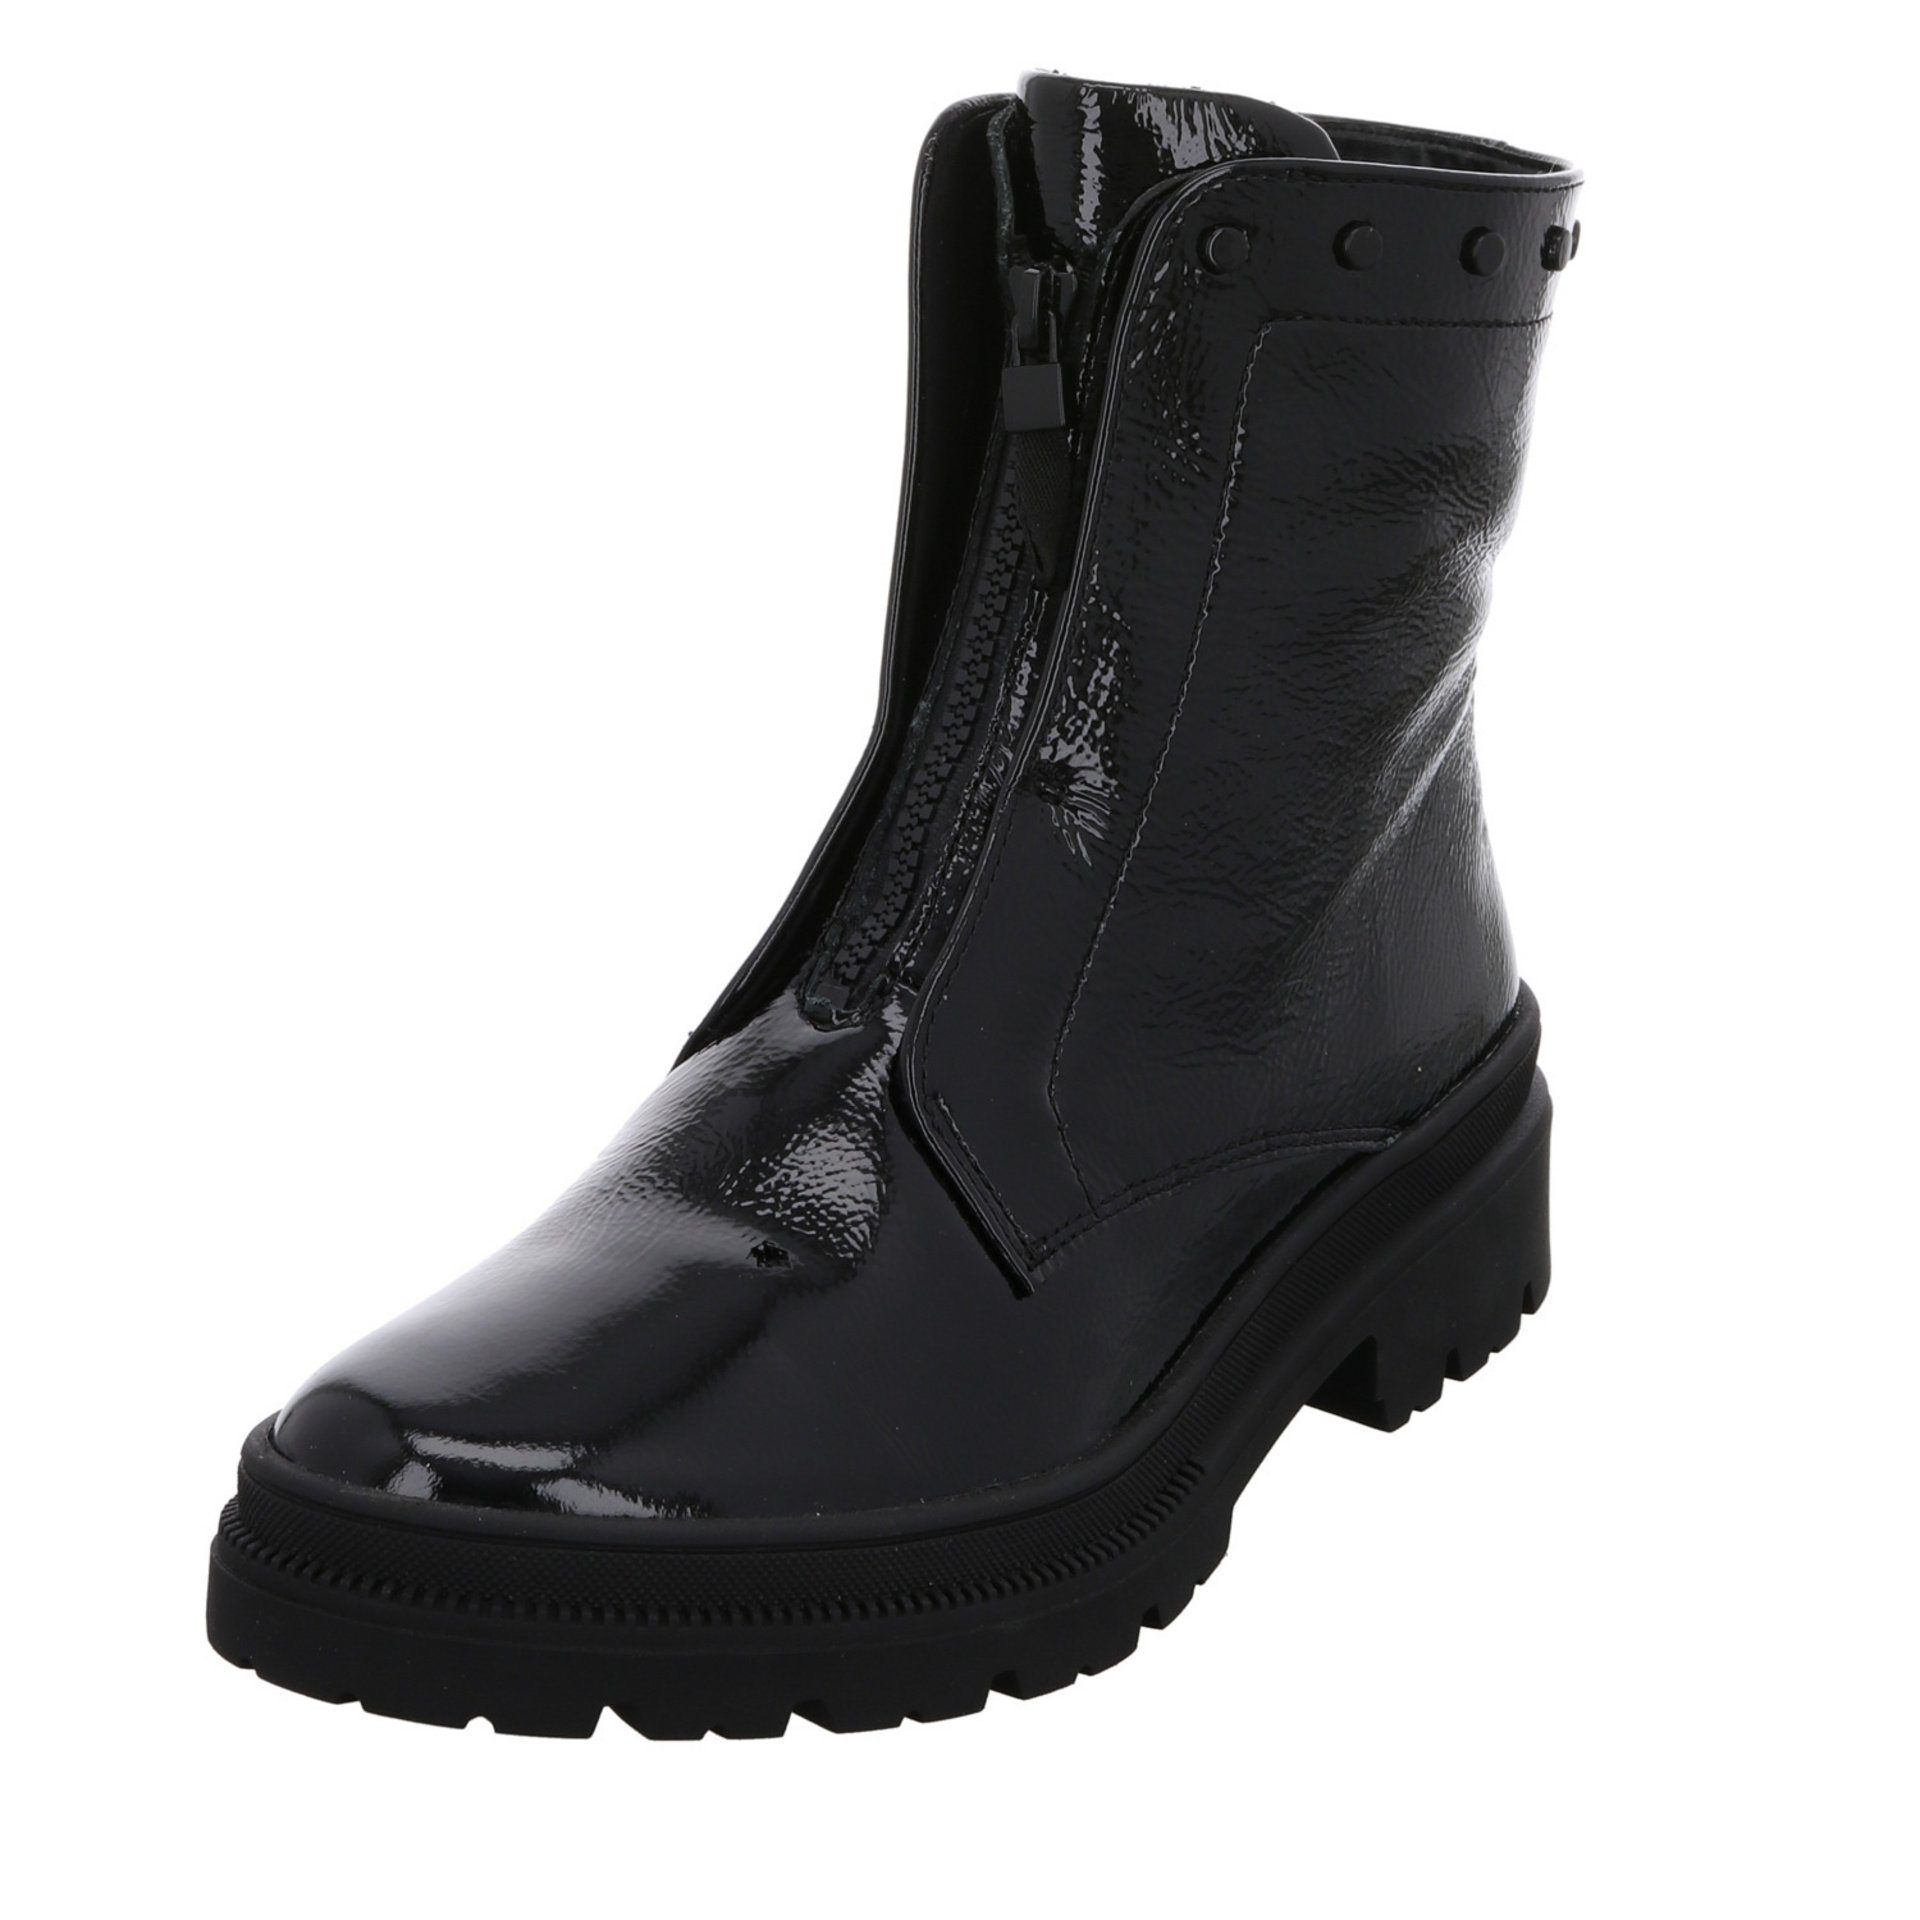 Ara Damen Stiefeletten Schuhe Dover 2.0 Boots Stiefelette Lackleder schwarz 046687